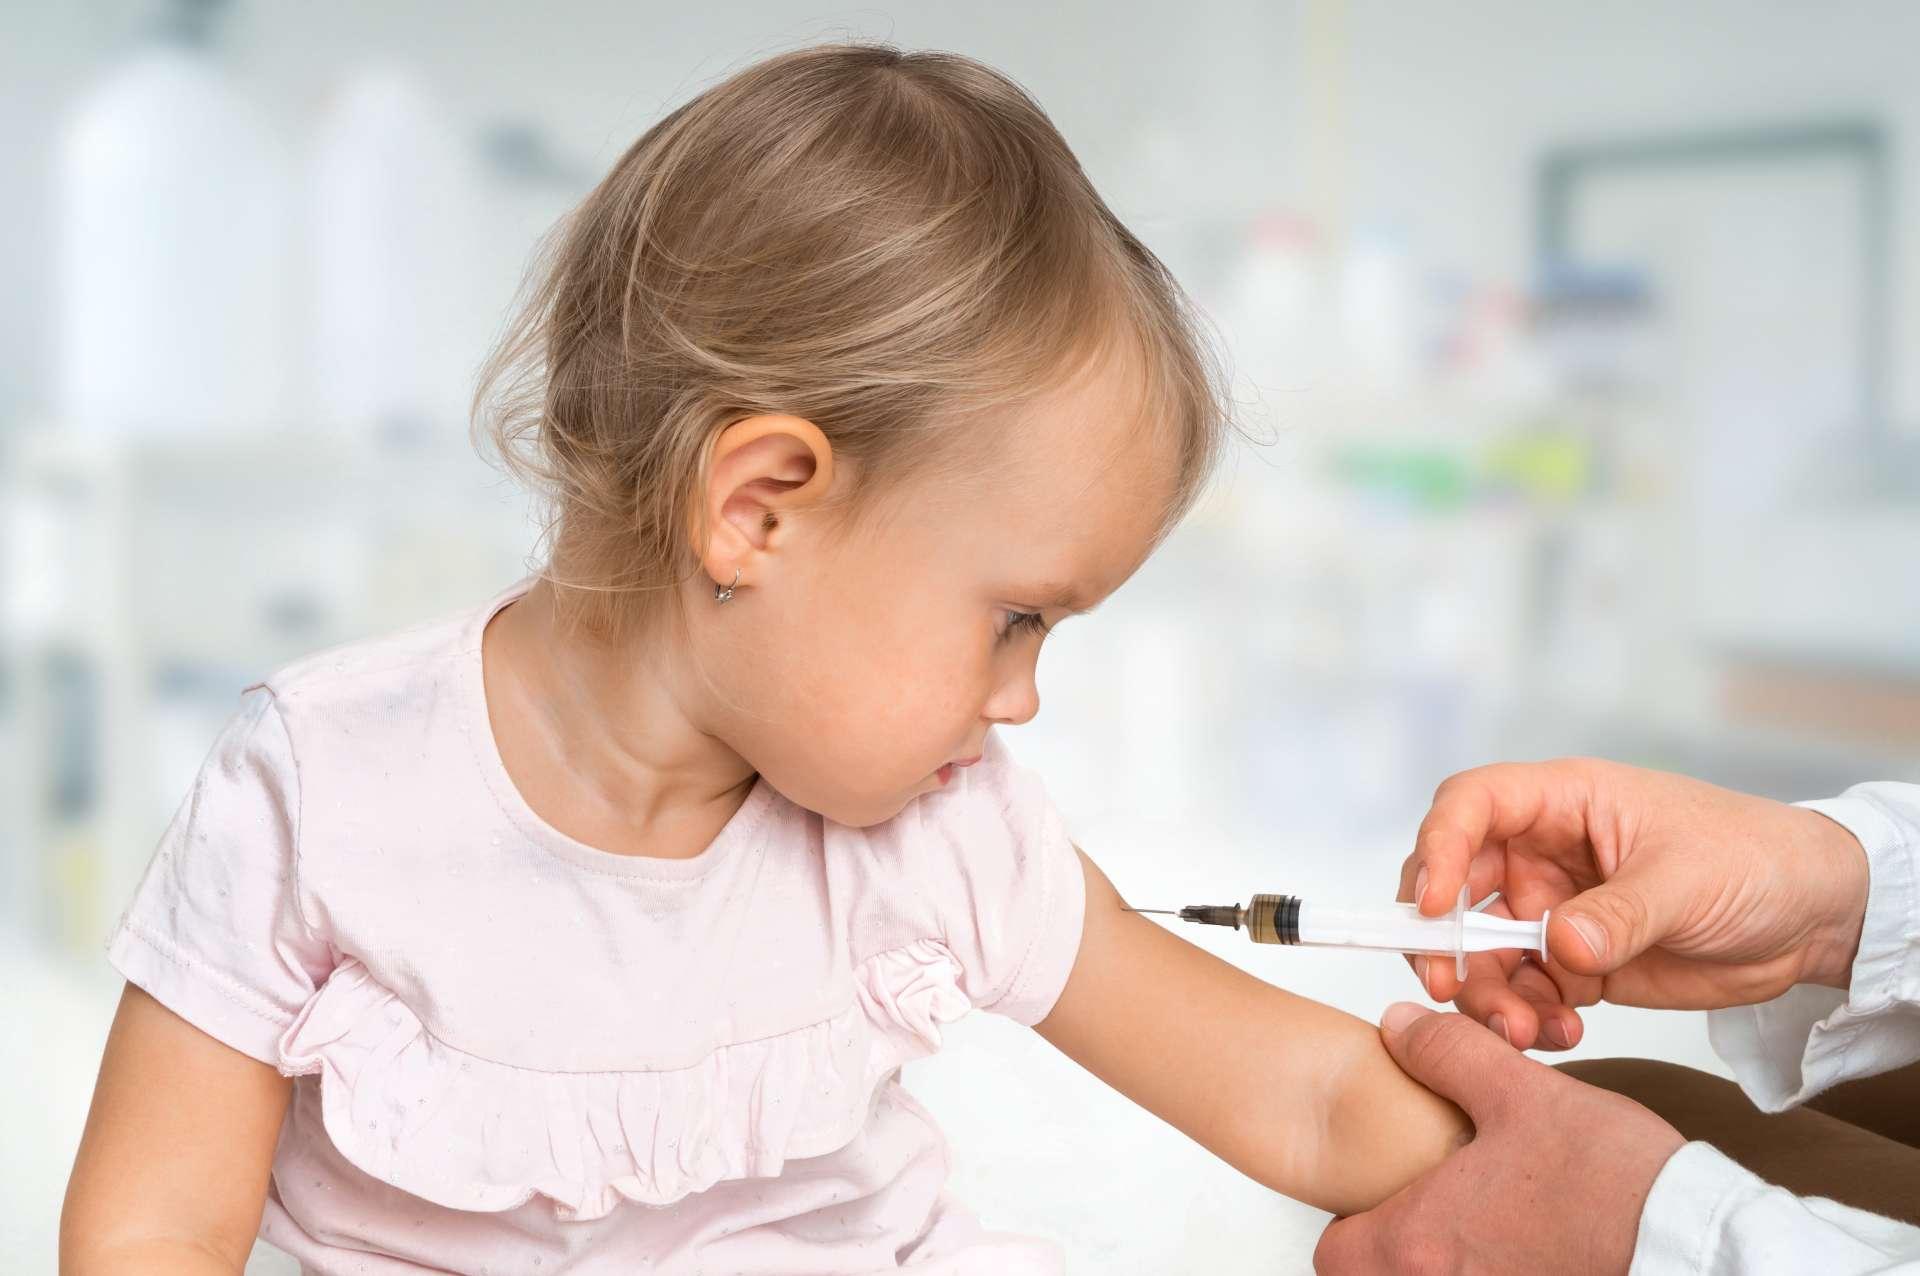 Kinderarzt injiziert Impfstoff in die Schulter des Babys - Impfkonzept